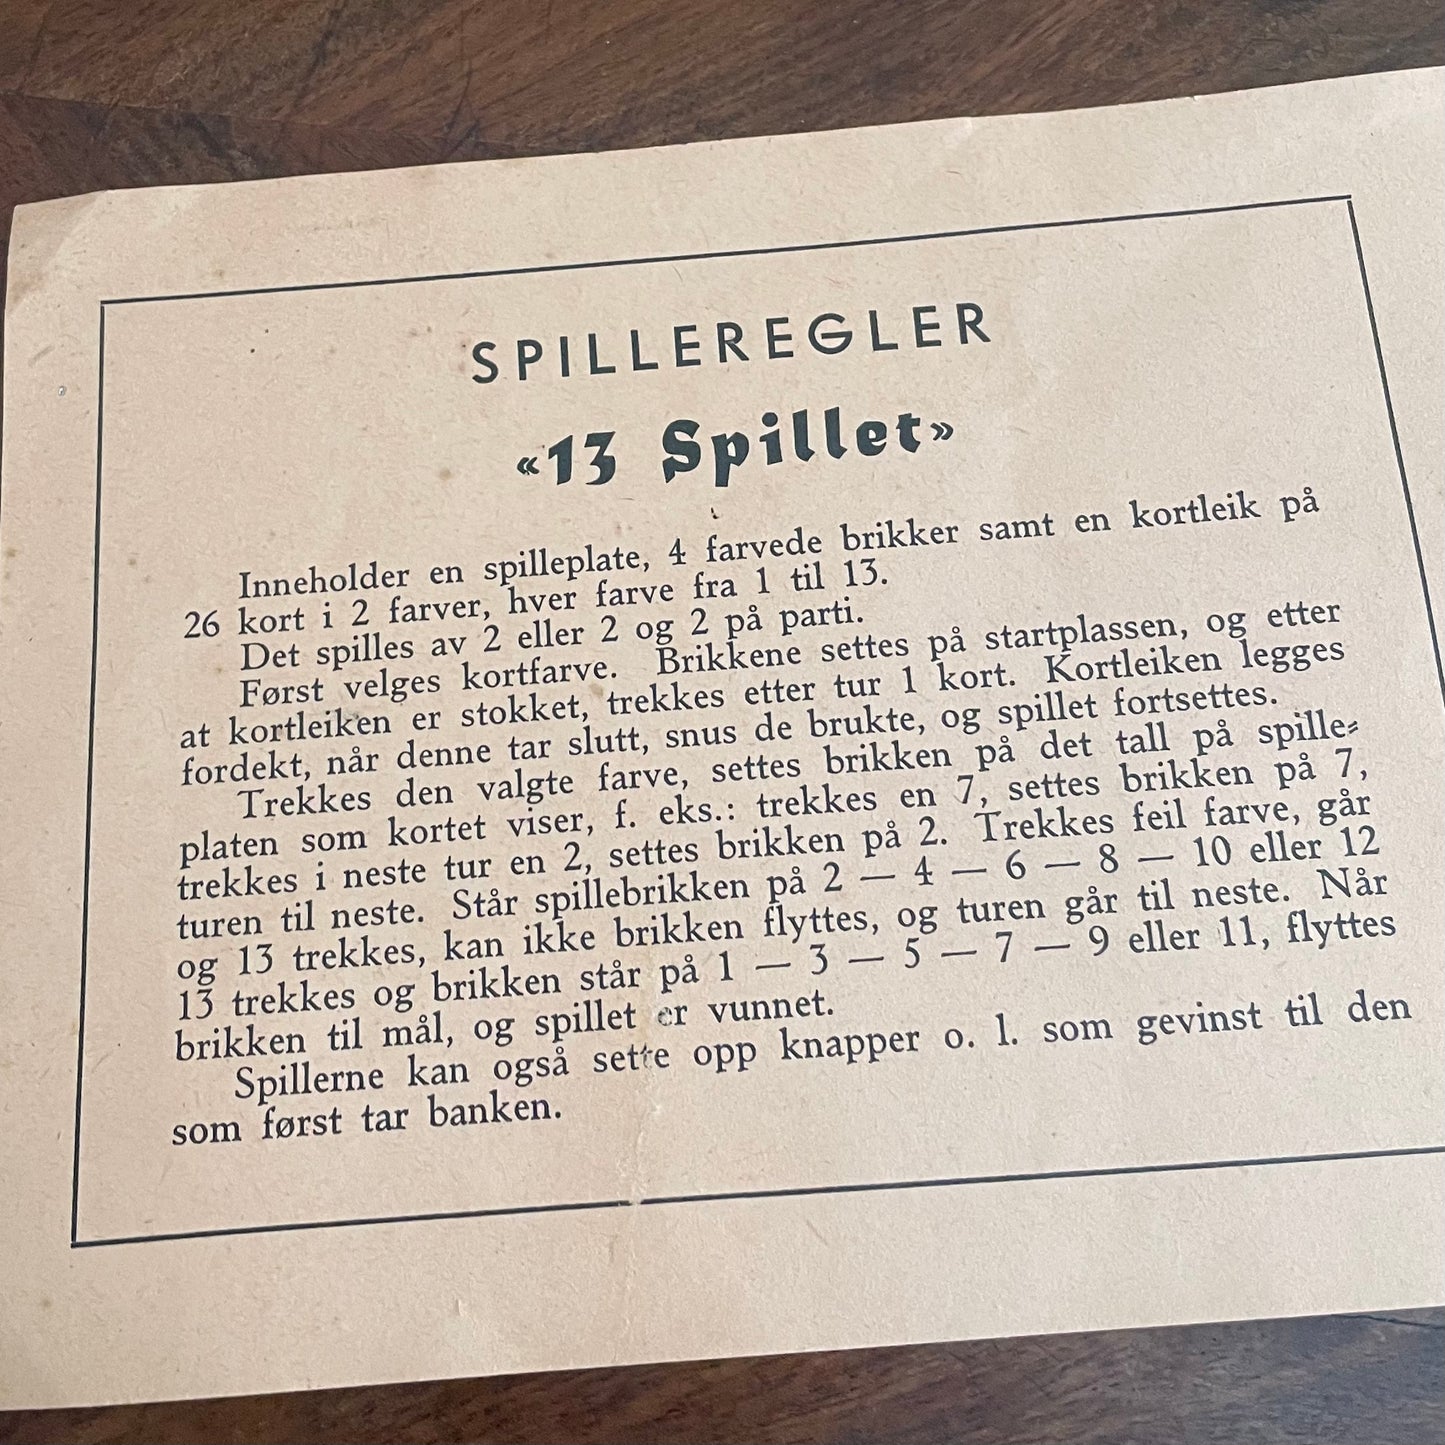 Vintage spill - 13 spillet